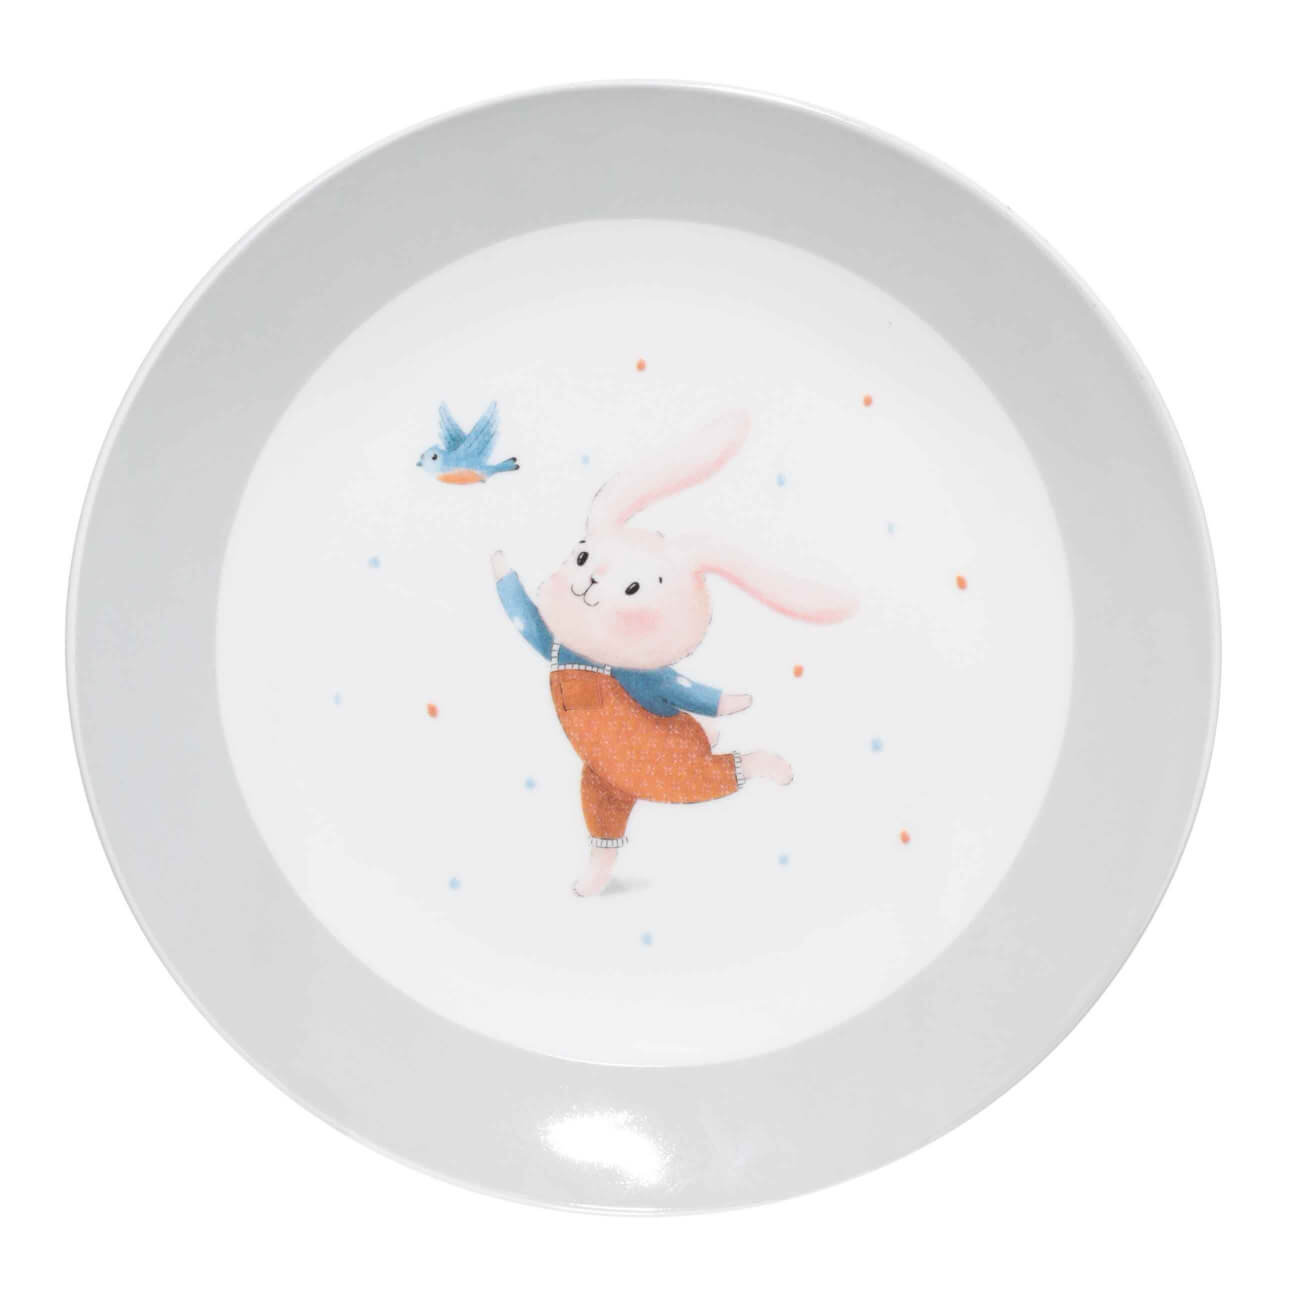 Тарелка закусочная, детская, 19 см, фарфор N, бело-серая, Кролик с птицей, Ideas life тарелка детская из бамбука трехсекционная